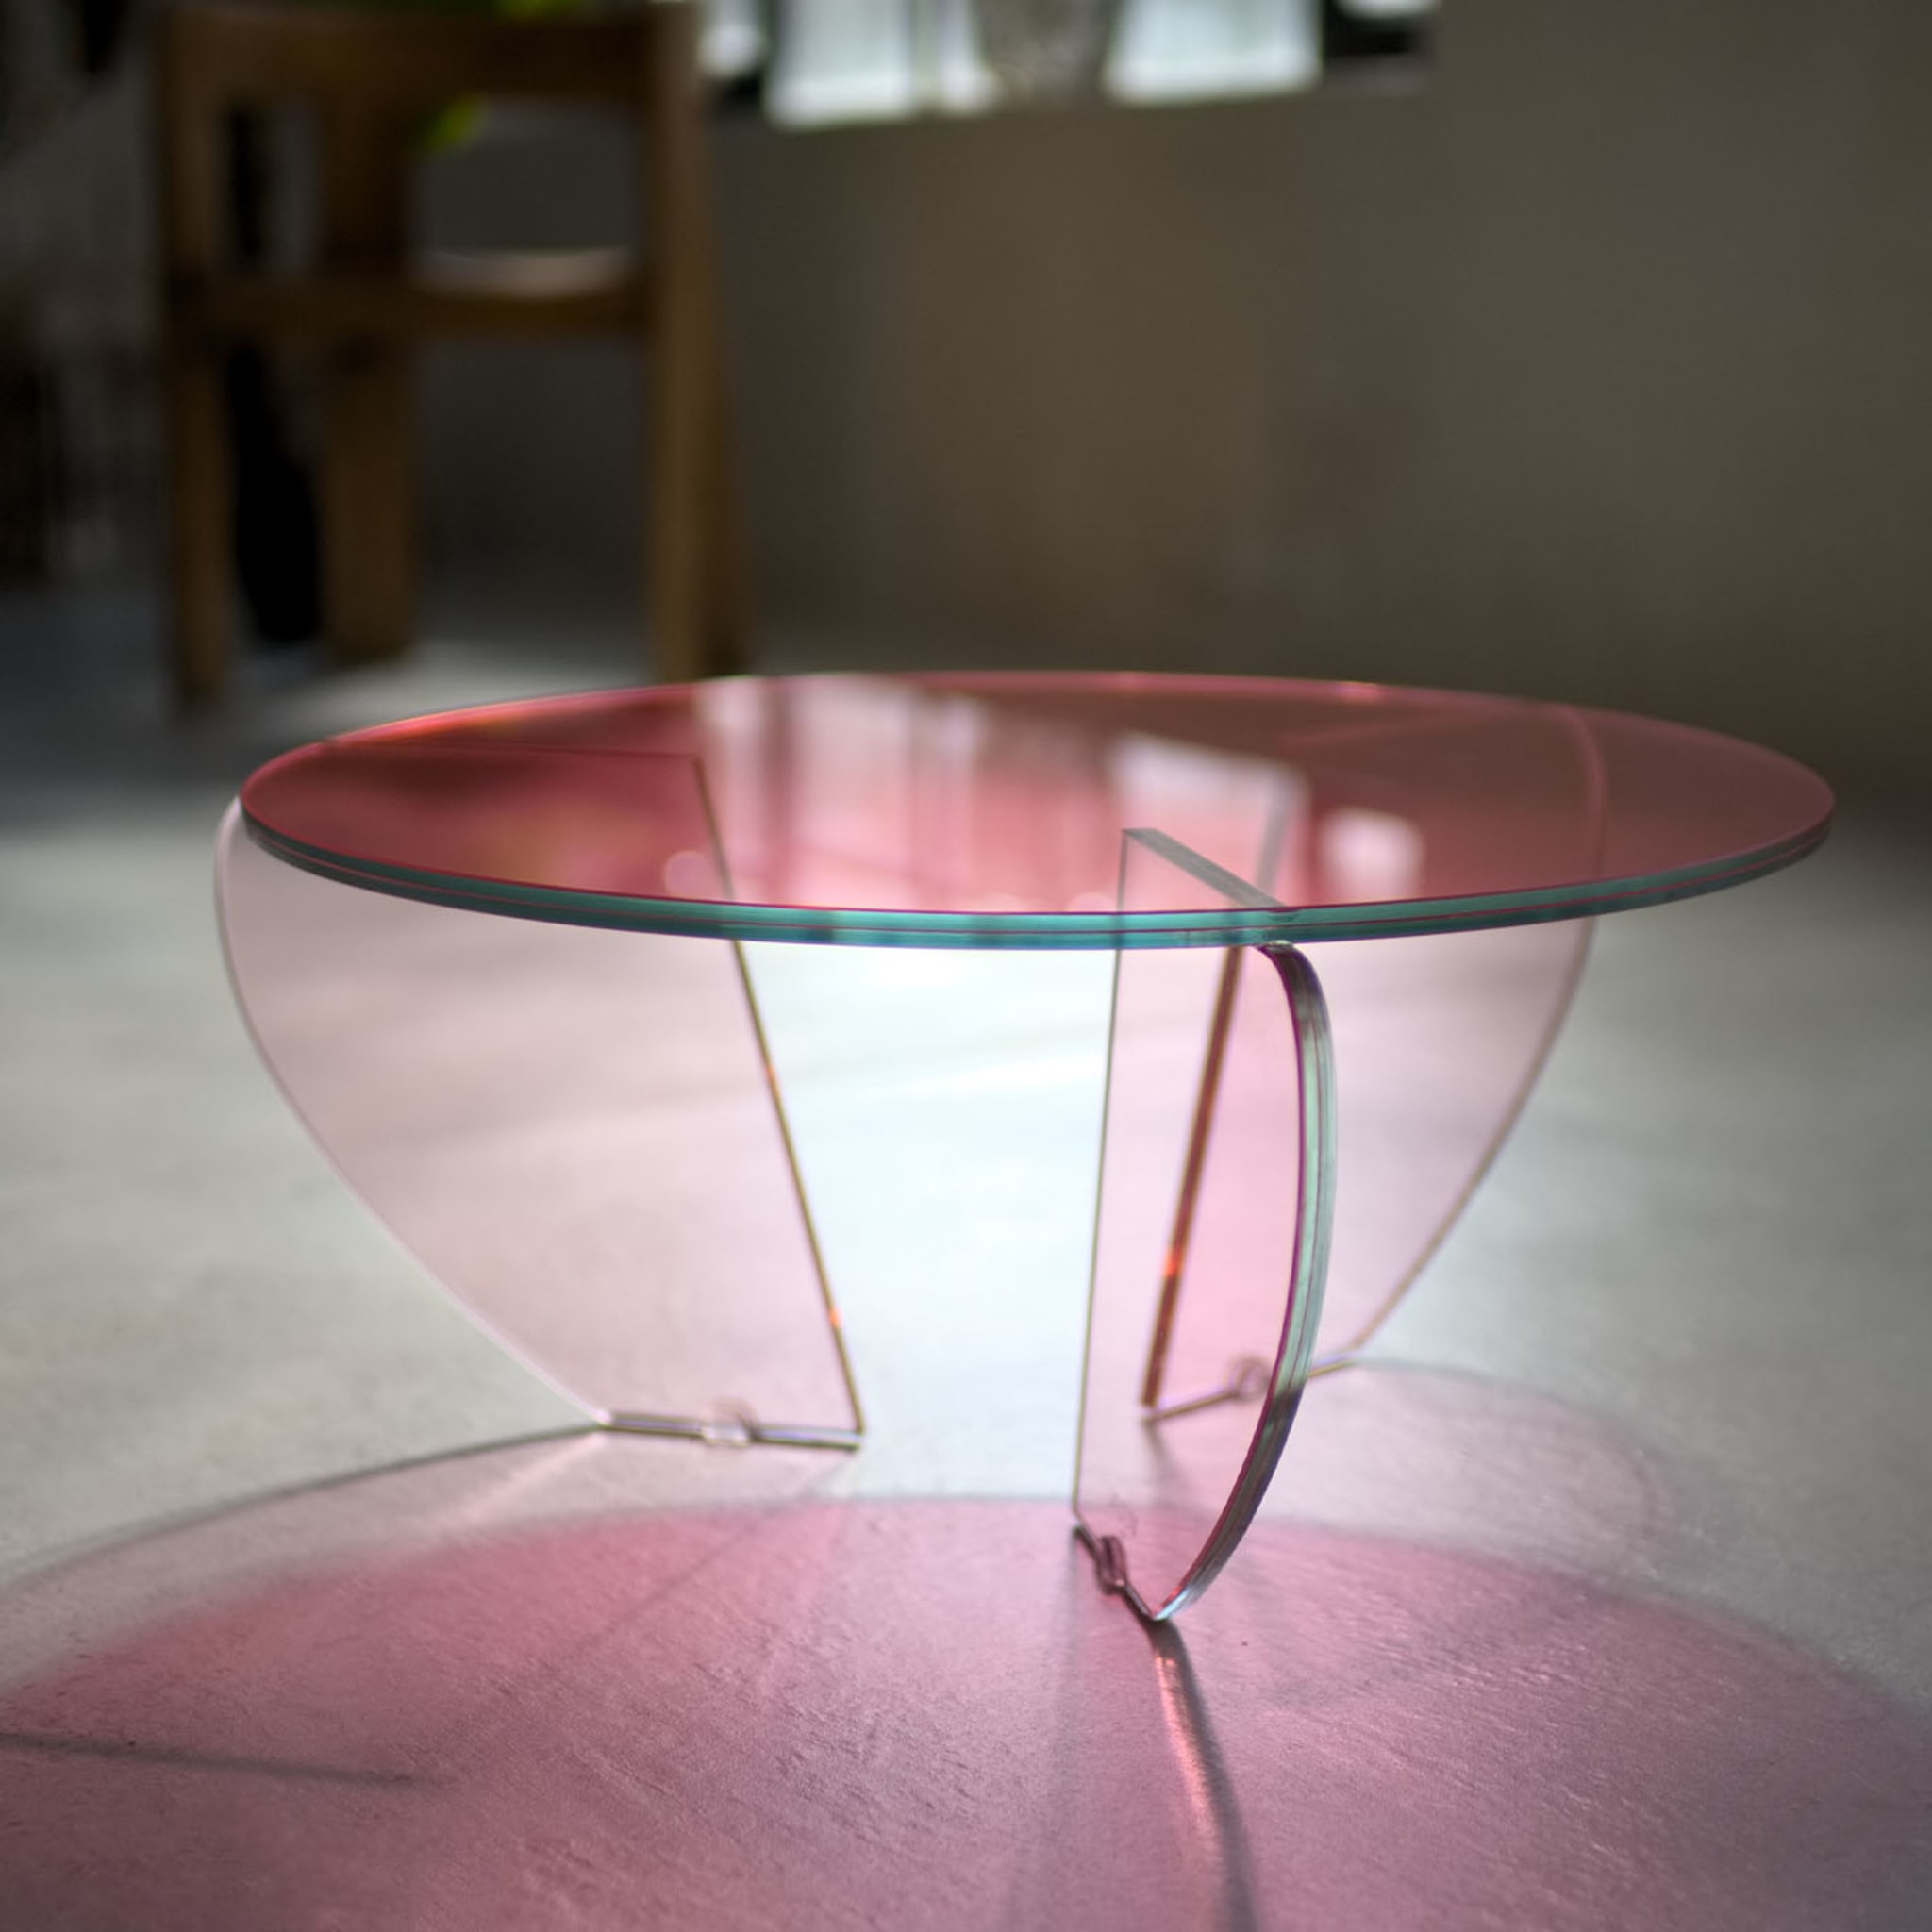 Teo Medium Colored Coffee Table by Andrea Petterini - Alternative view 1